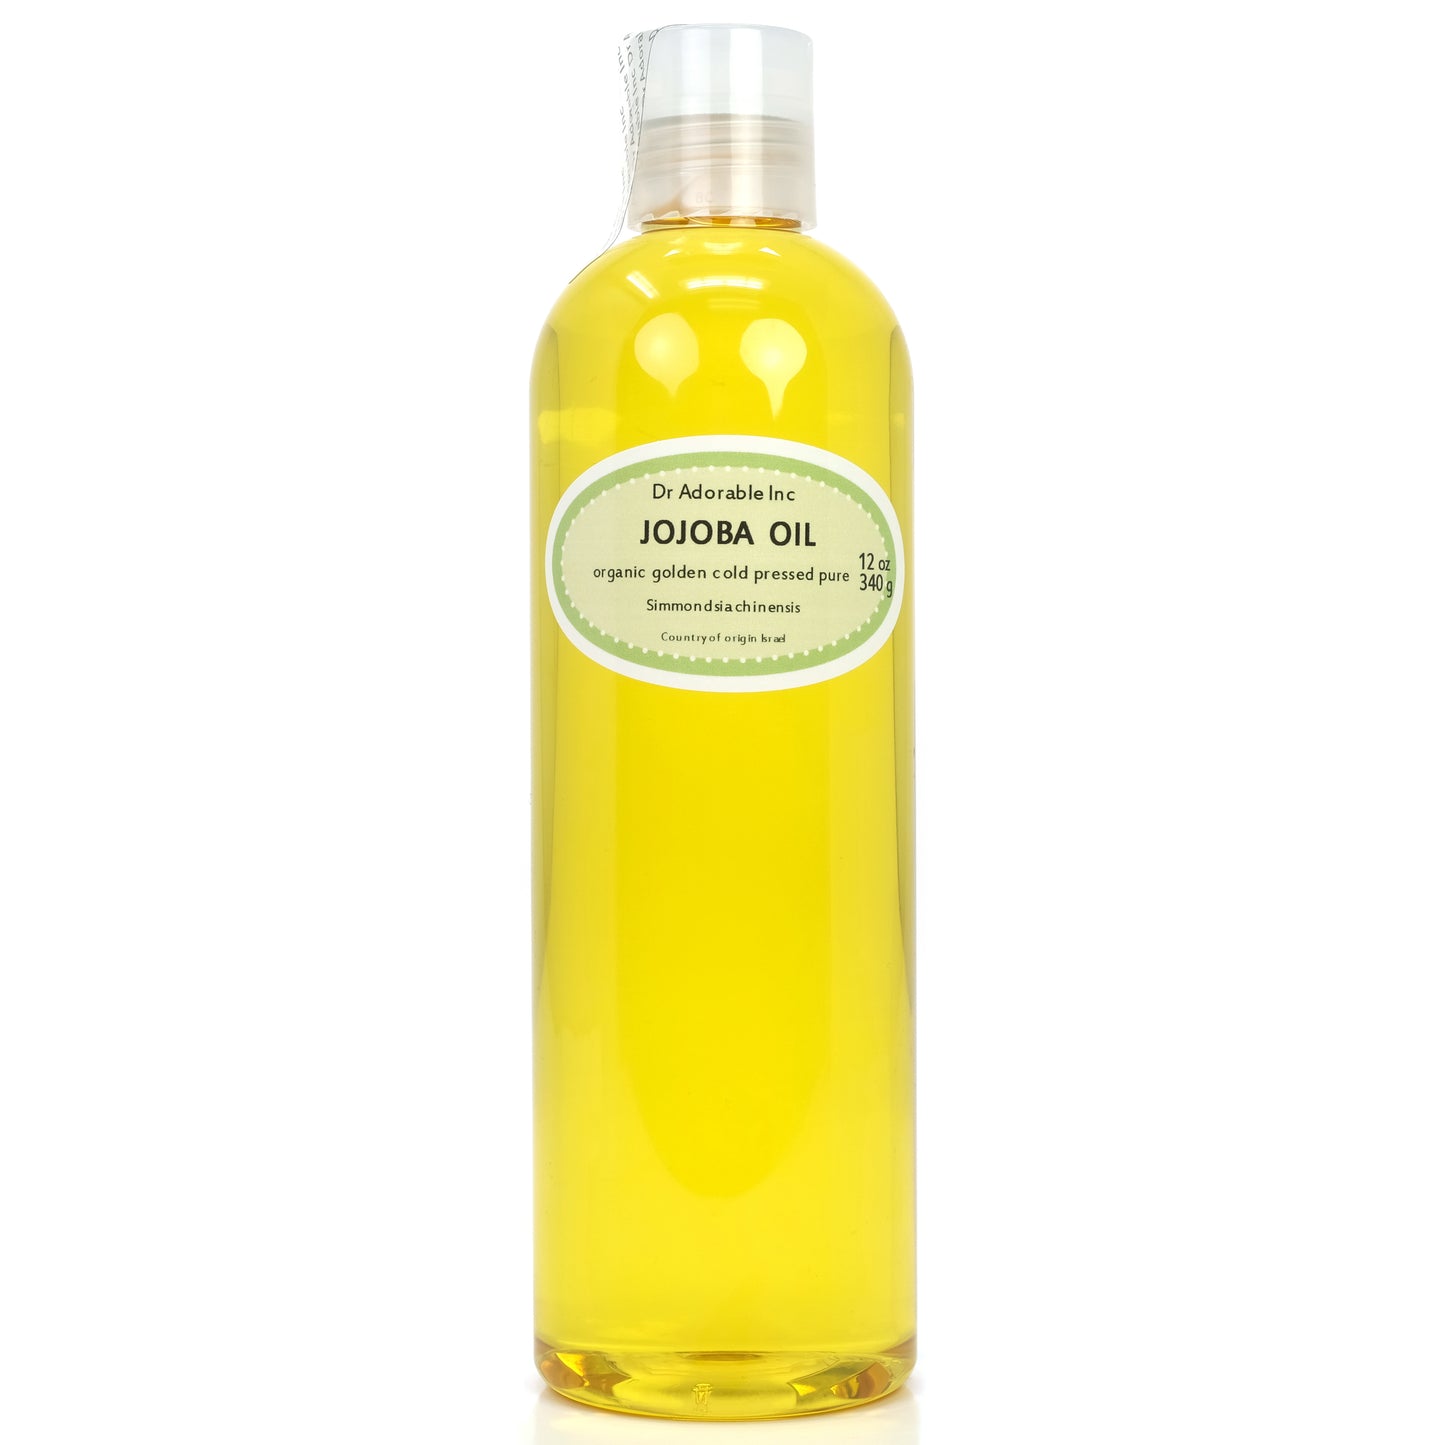 Jojoba Oil Golden Unrefined - 100% Pure Natural Organic Cold Pressed